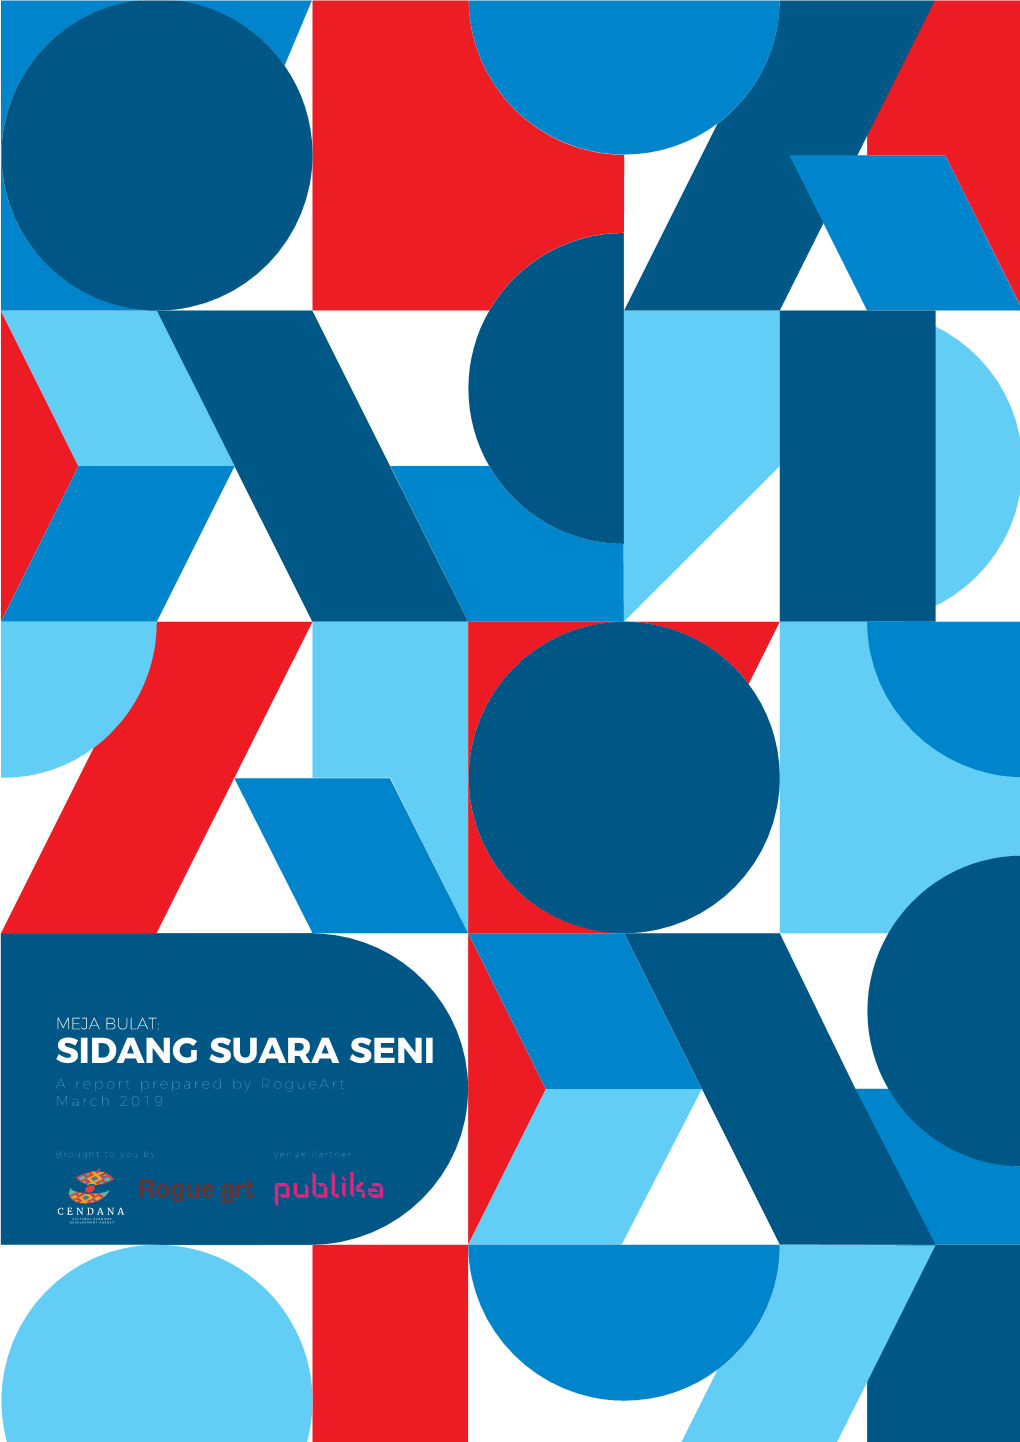 MEJA BULAT: SIDANG SUARA SENI a Report Prepared by Rogueart March 2019